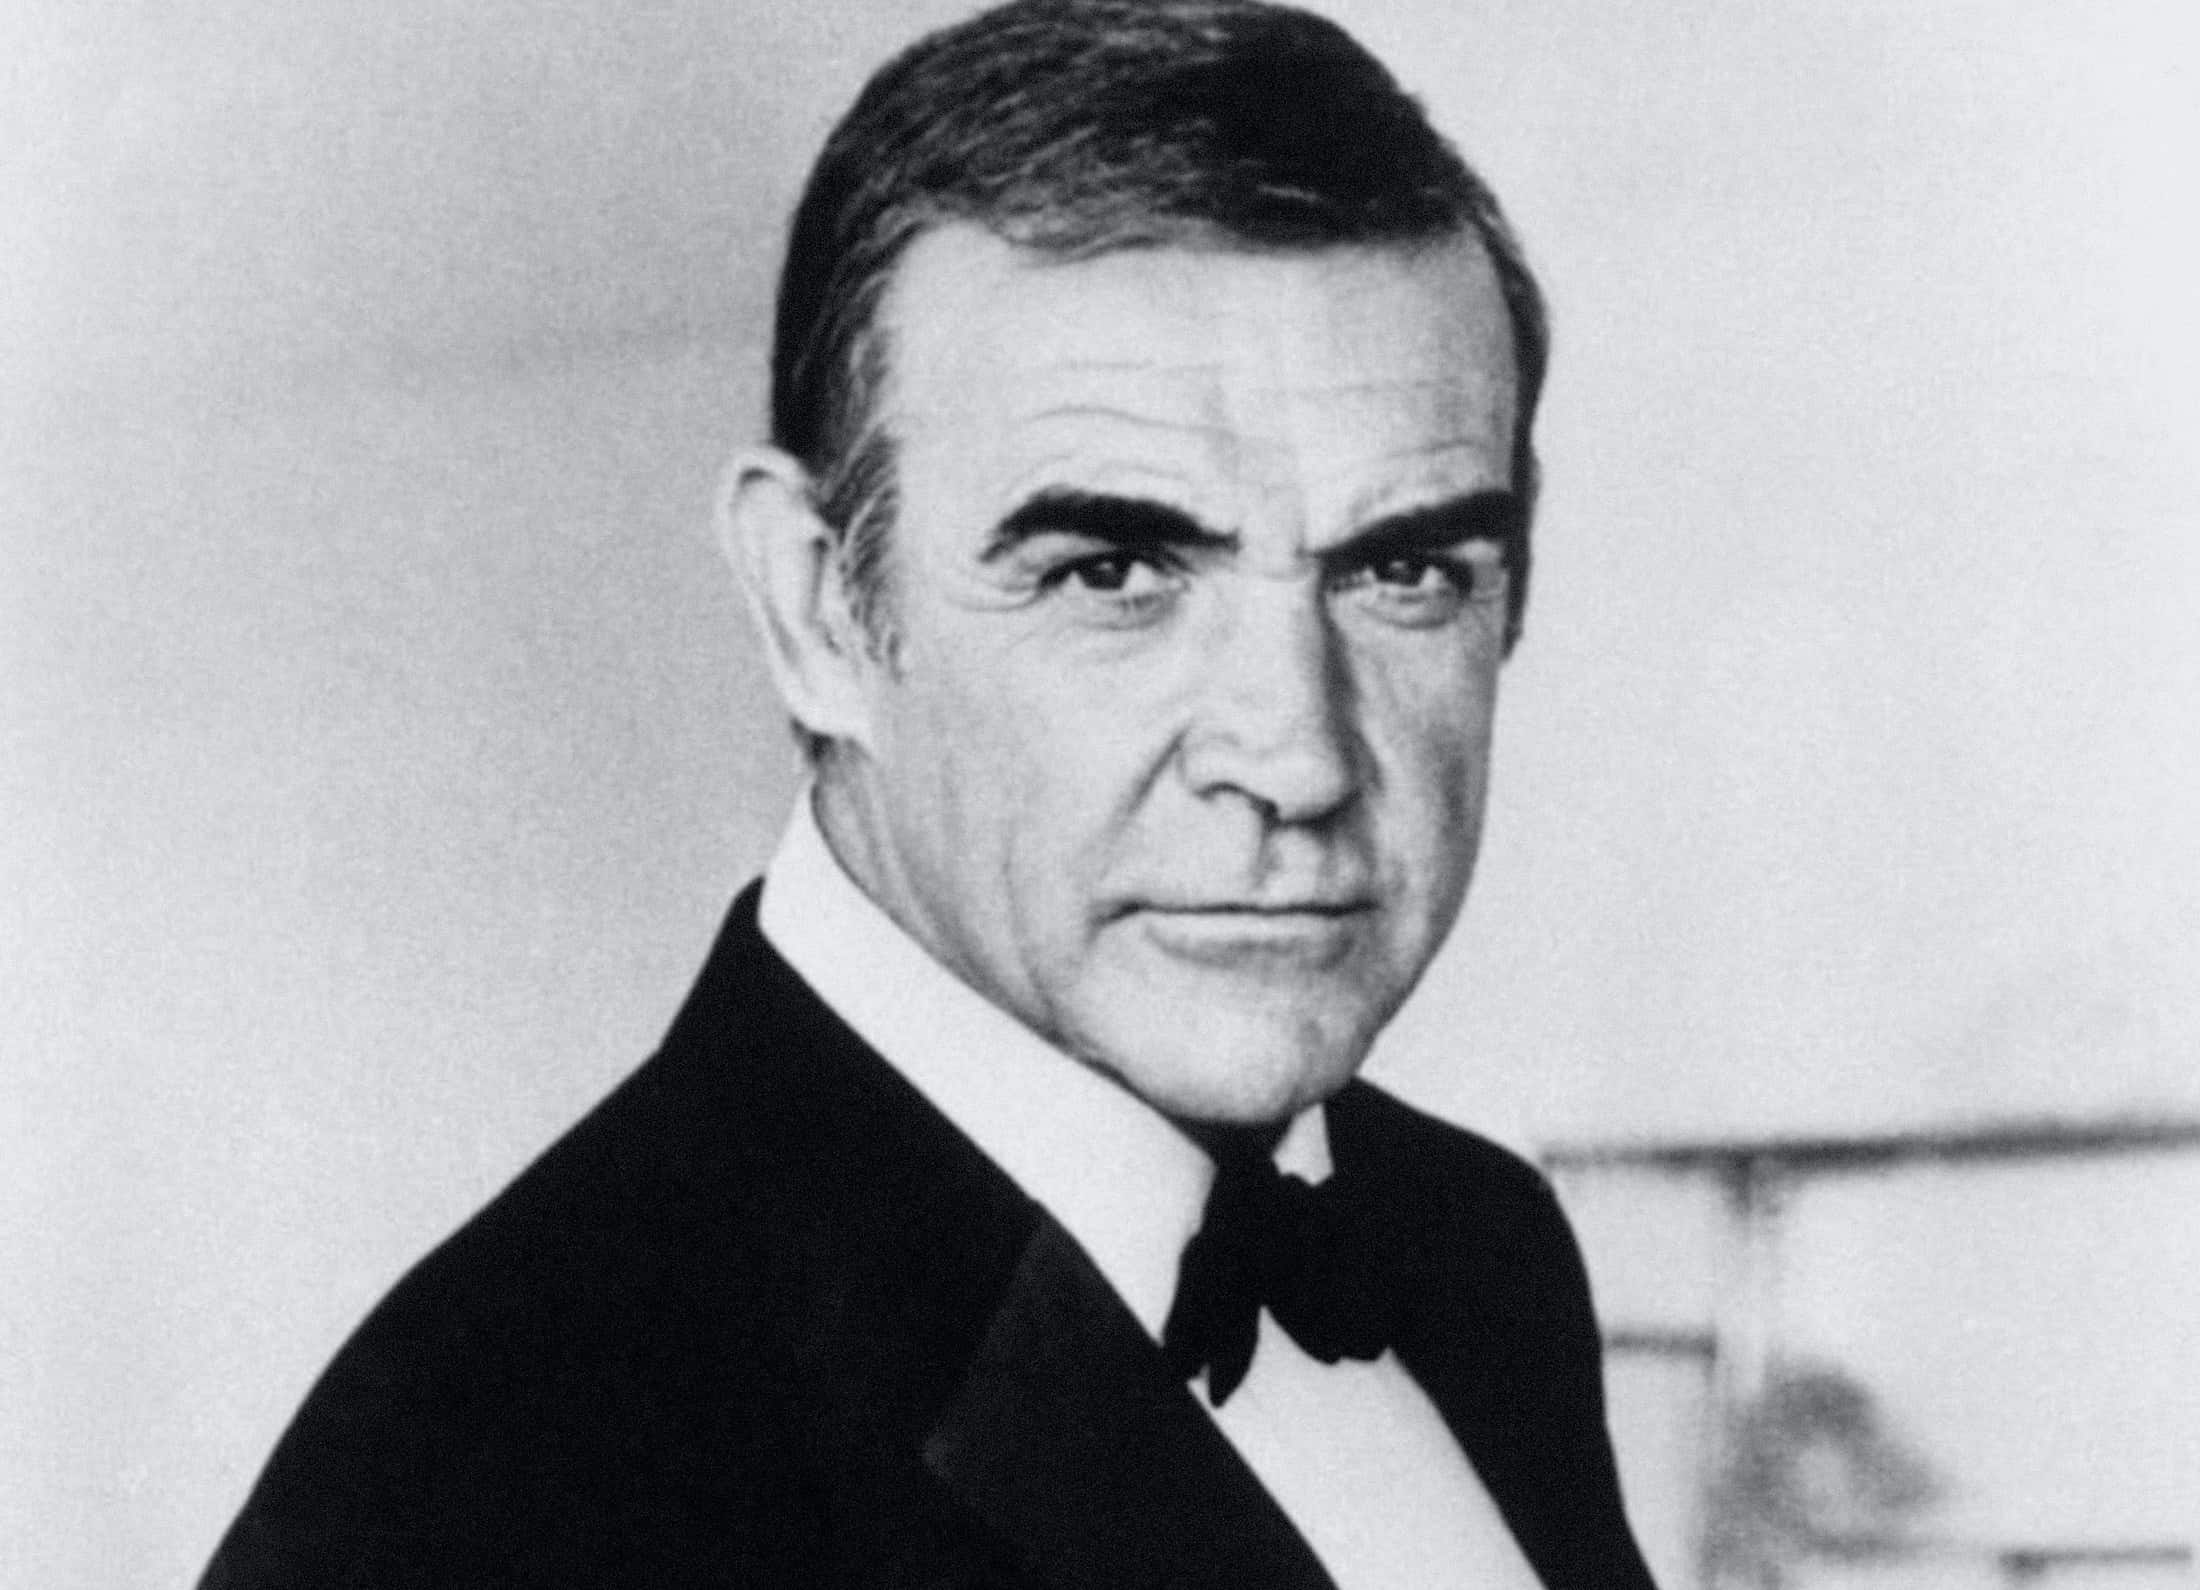 James Bond star Sir Sean Connery dies